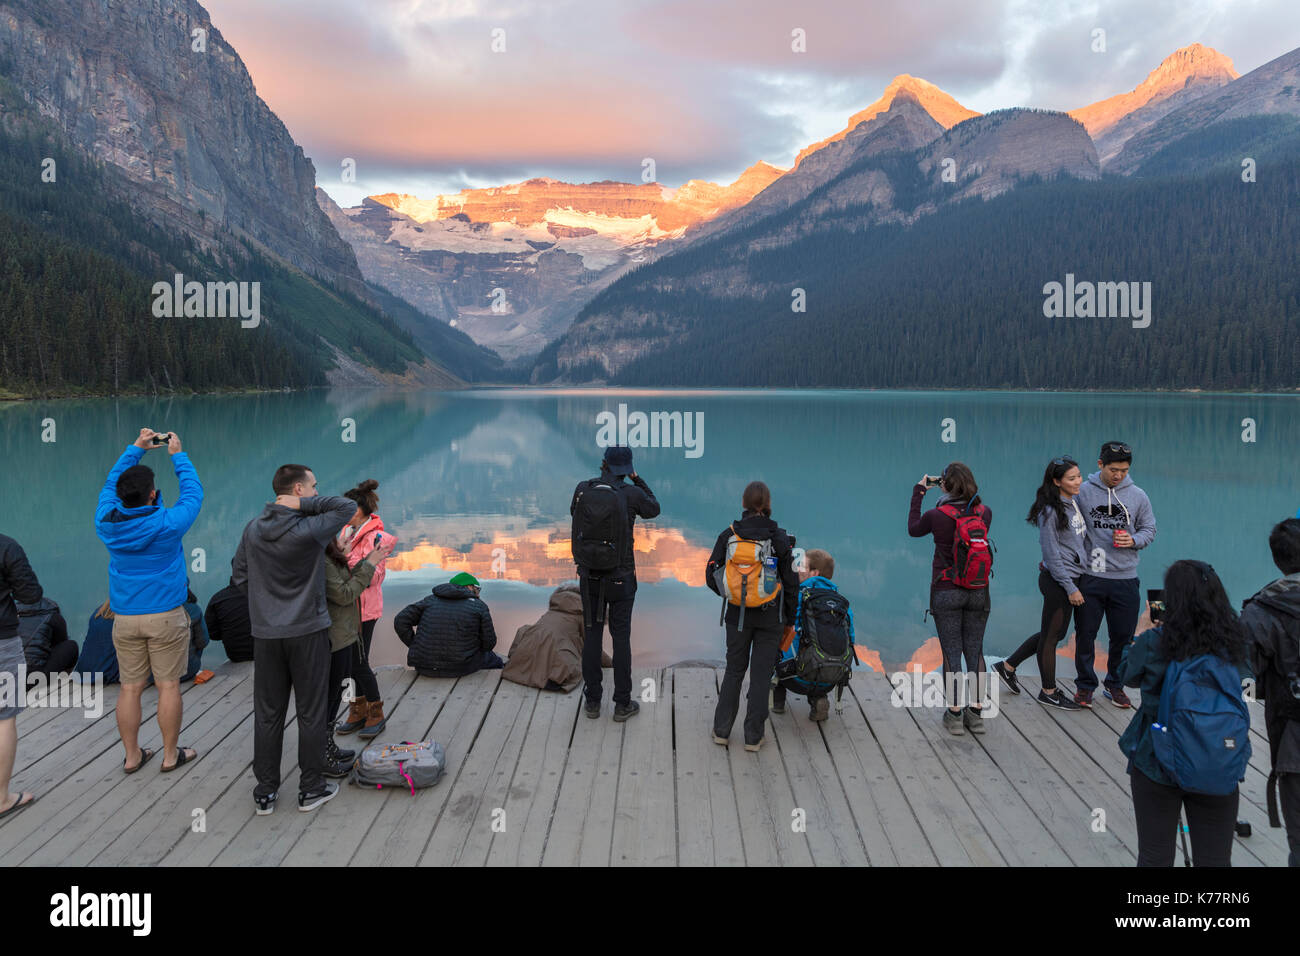 Il parco nazionale di Banff, Alberta Canada - 20 settembre 2017: folla di fotografi e turisti al sorgere del sole sulla riva del lago Louise Foto Stock